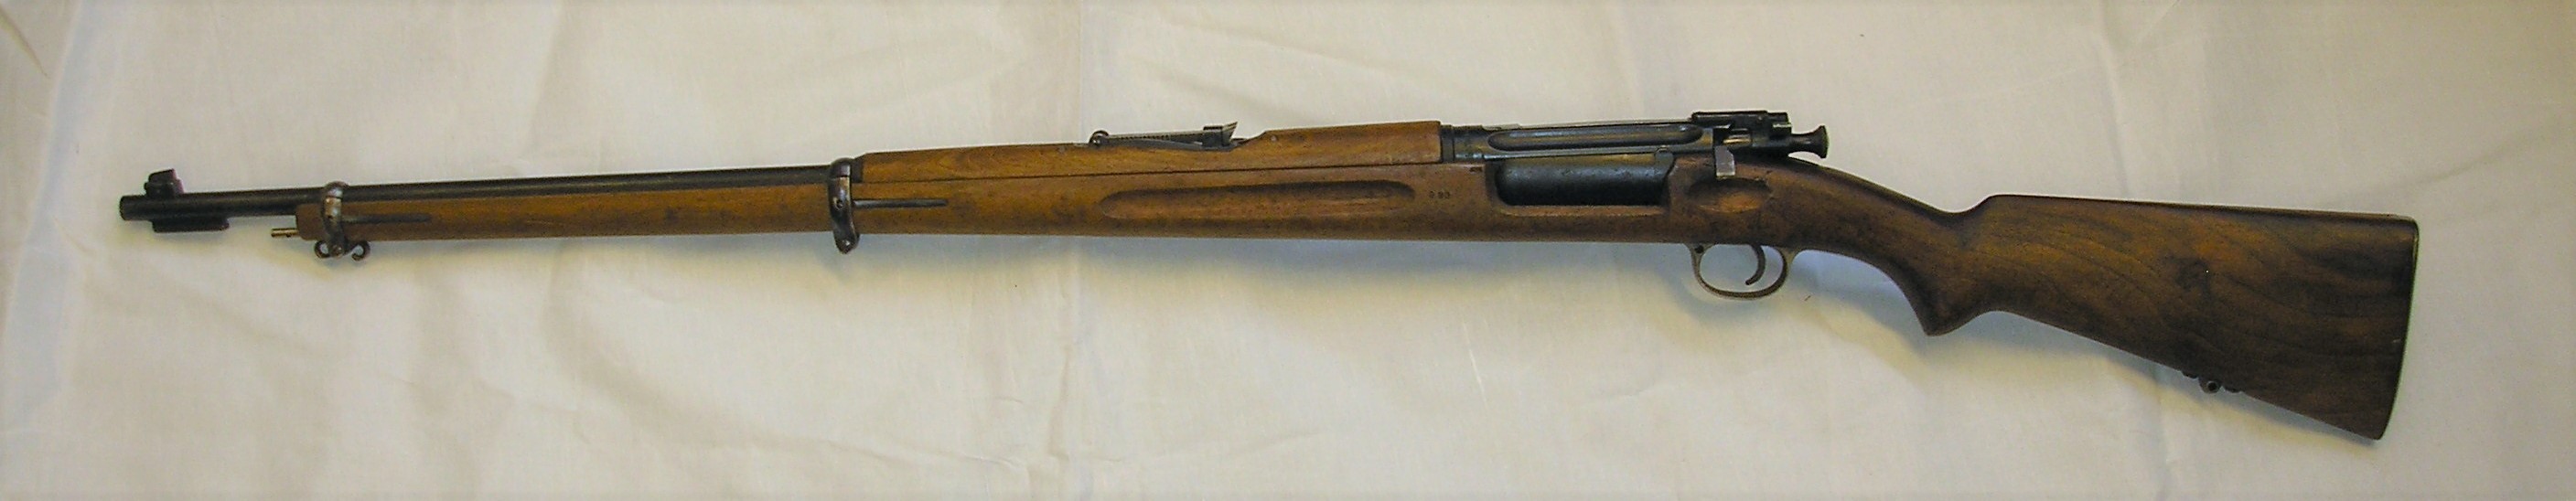 ./guns/rifle/bilder/Rifle-Kongsberg-Krag-M1894-1944-Nb090-2.JPG